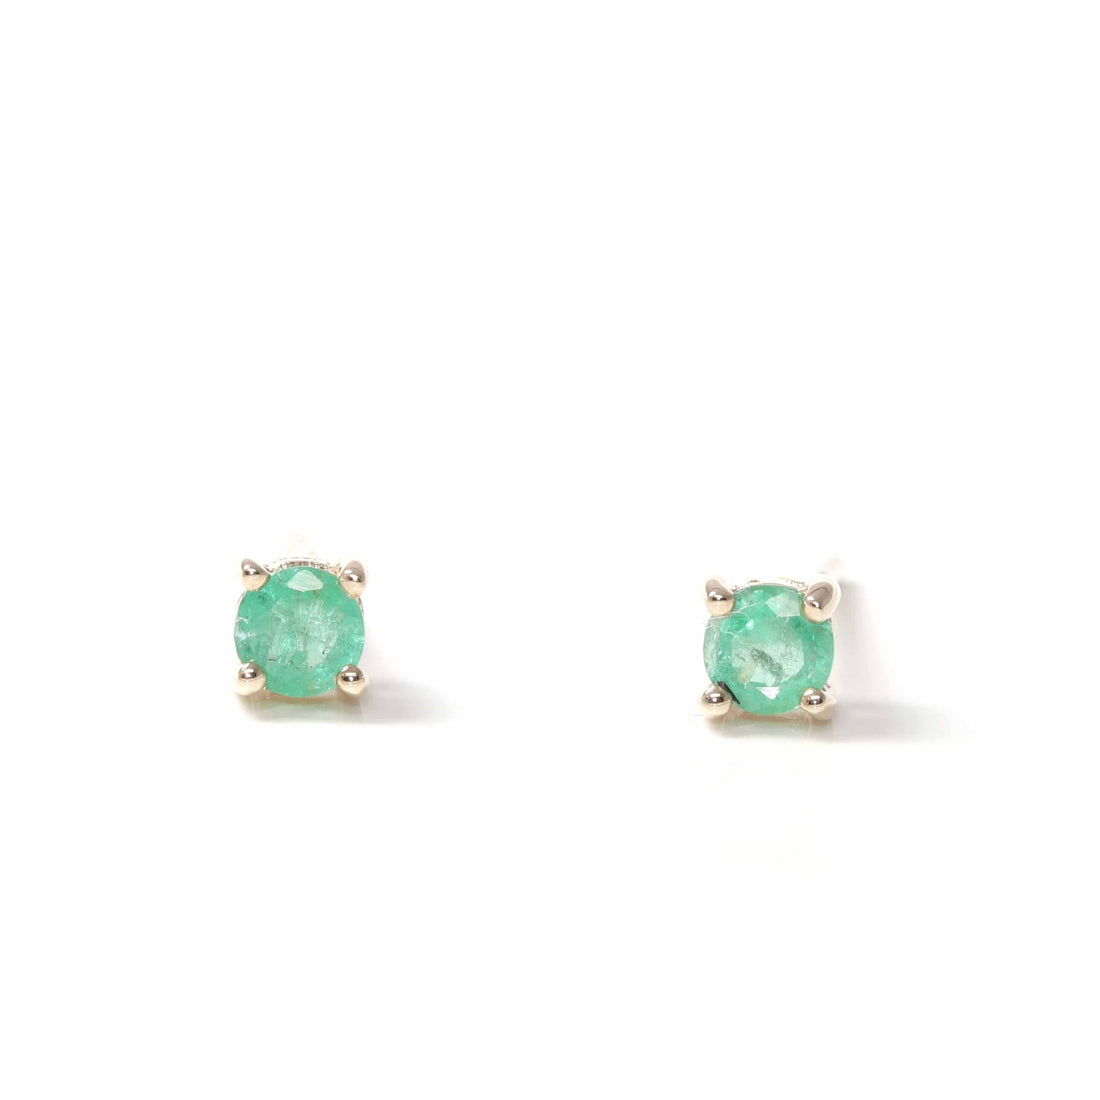 Baikalla Jewelry Gold Gemstone Earrings Baikalla™ 14K Classic Yellow Gold Natural Emerald Earrings